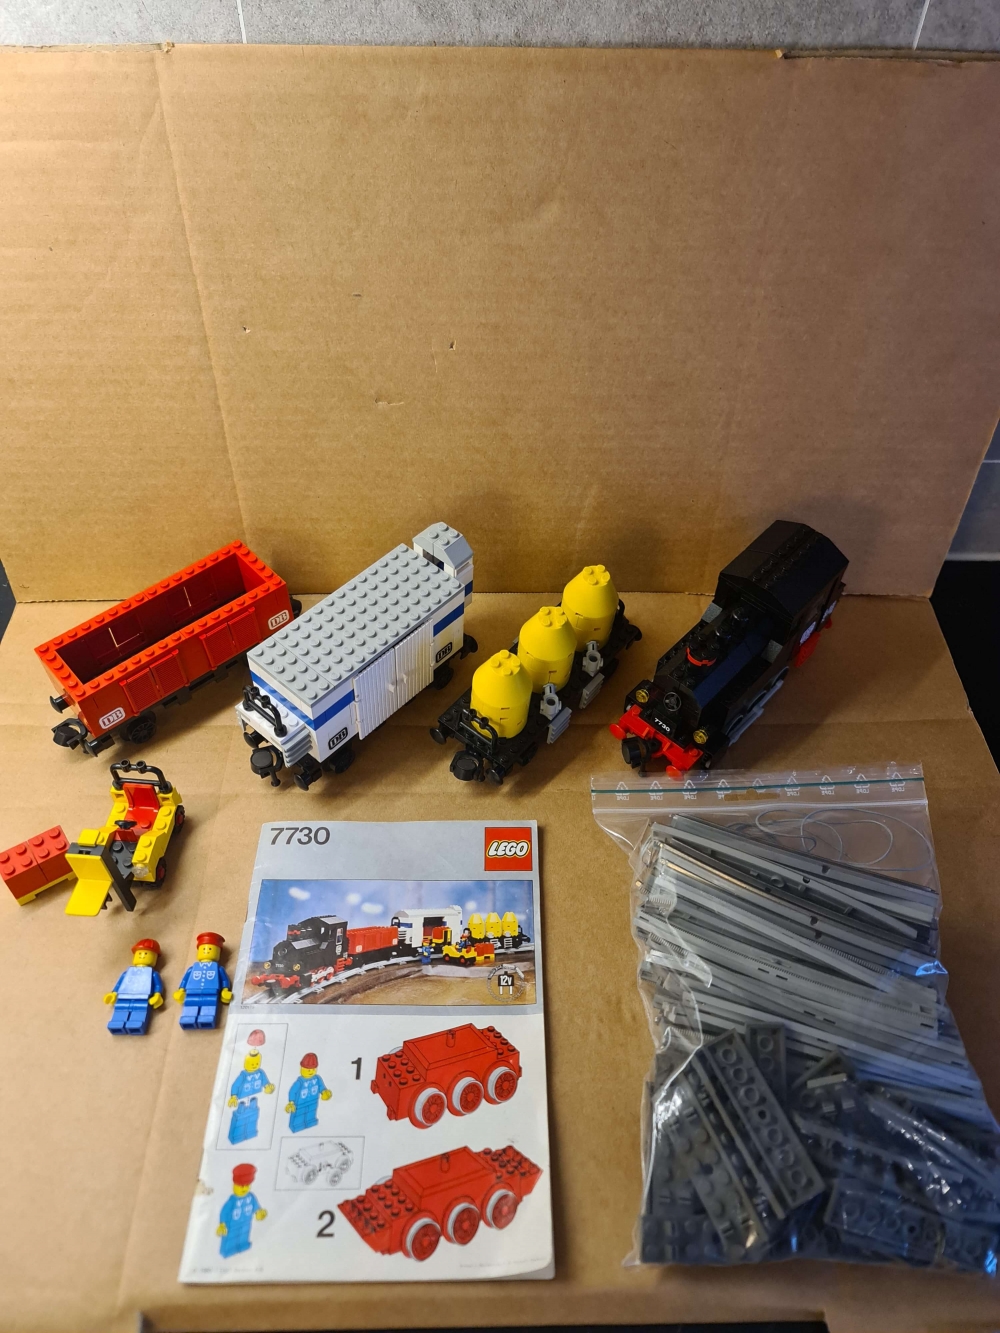 Sett 7730 fra Lego Train : 12V serien
Pent sett. Komplett foruten motoren som er byttet ut. Se info.
Med fin manual.